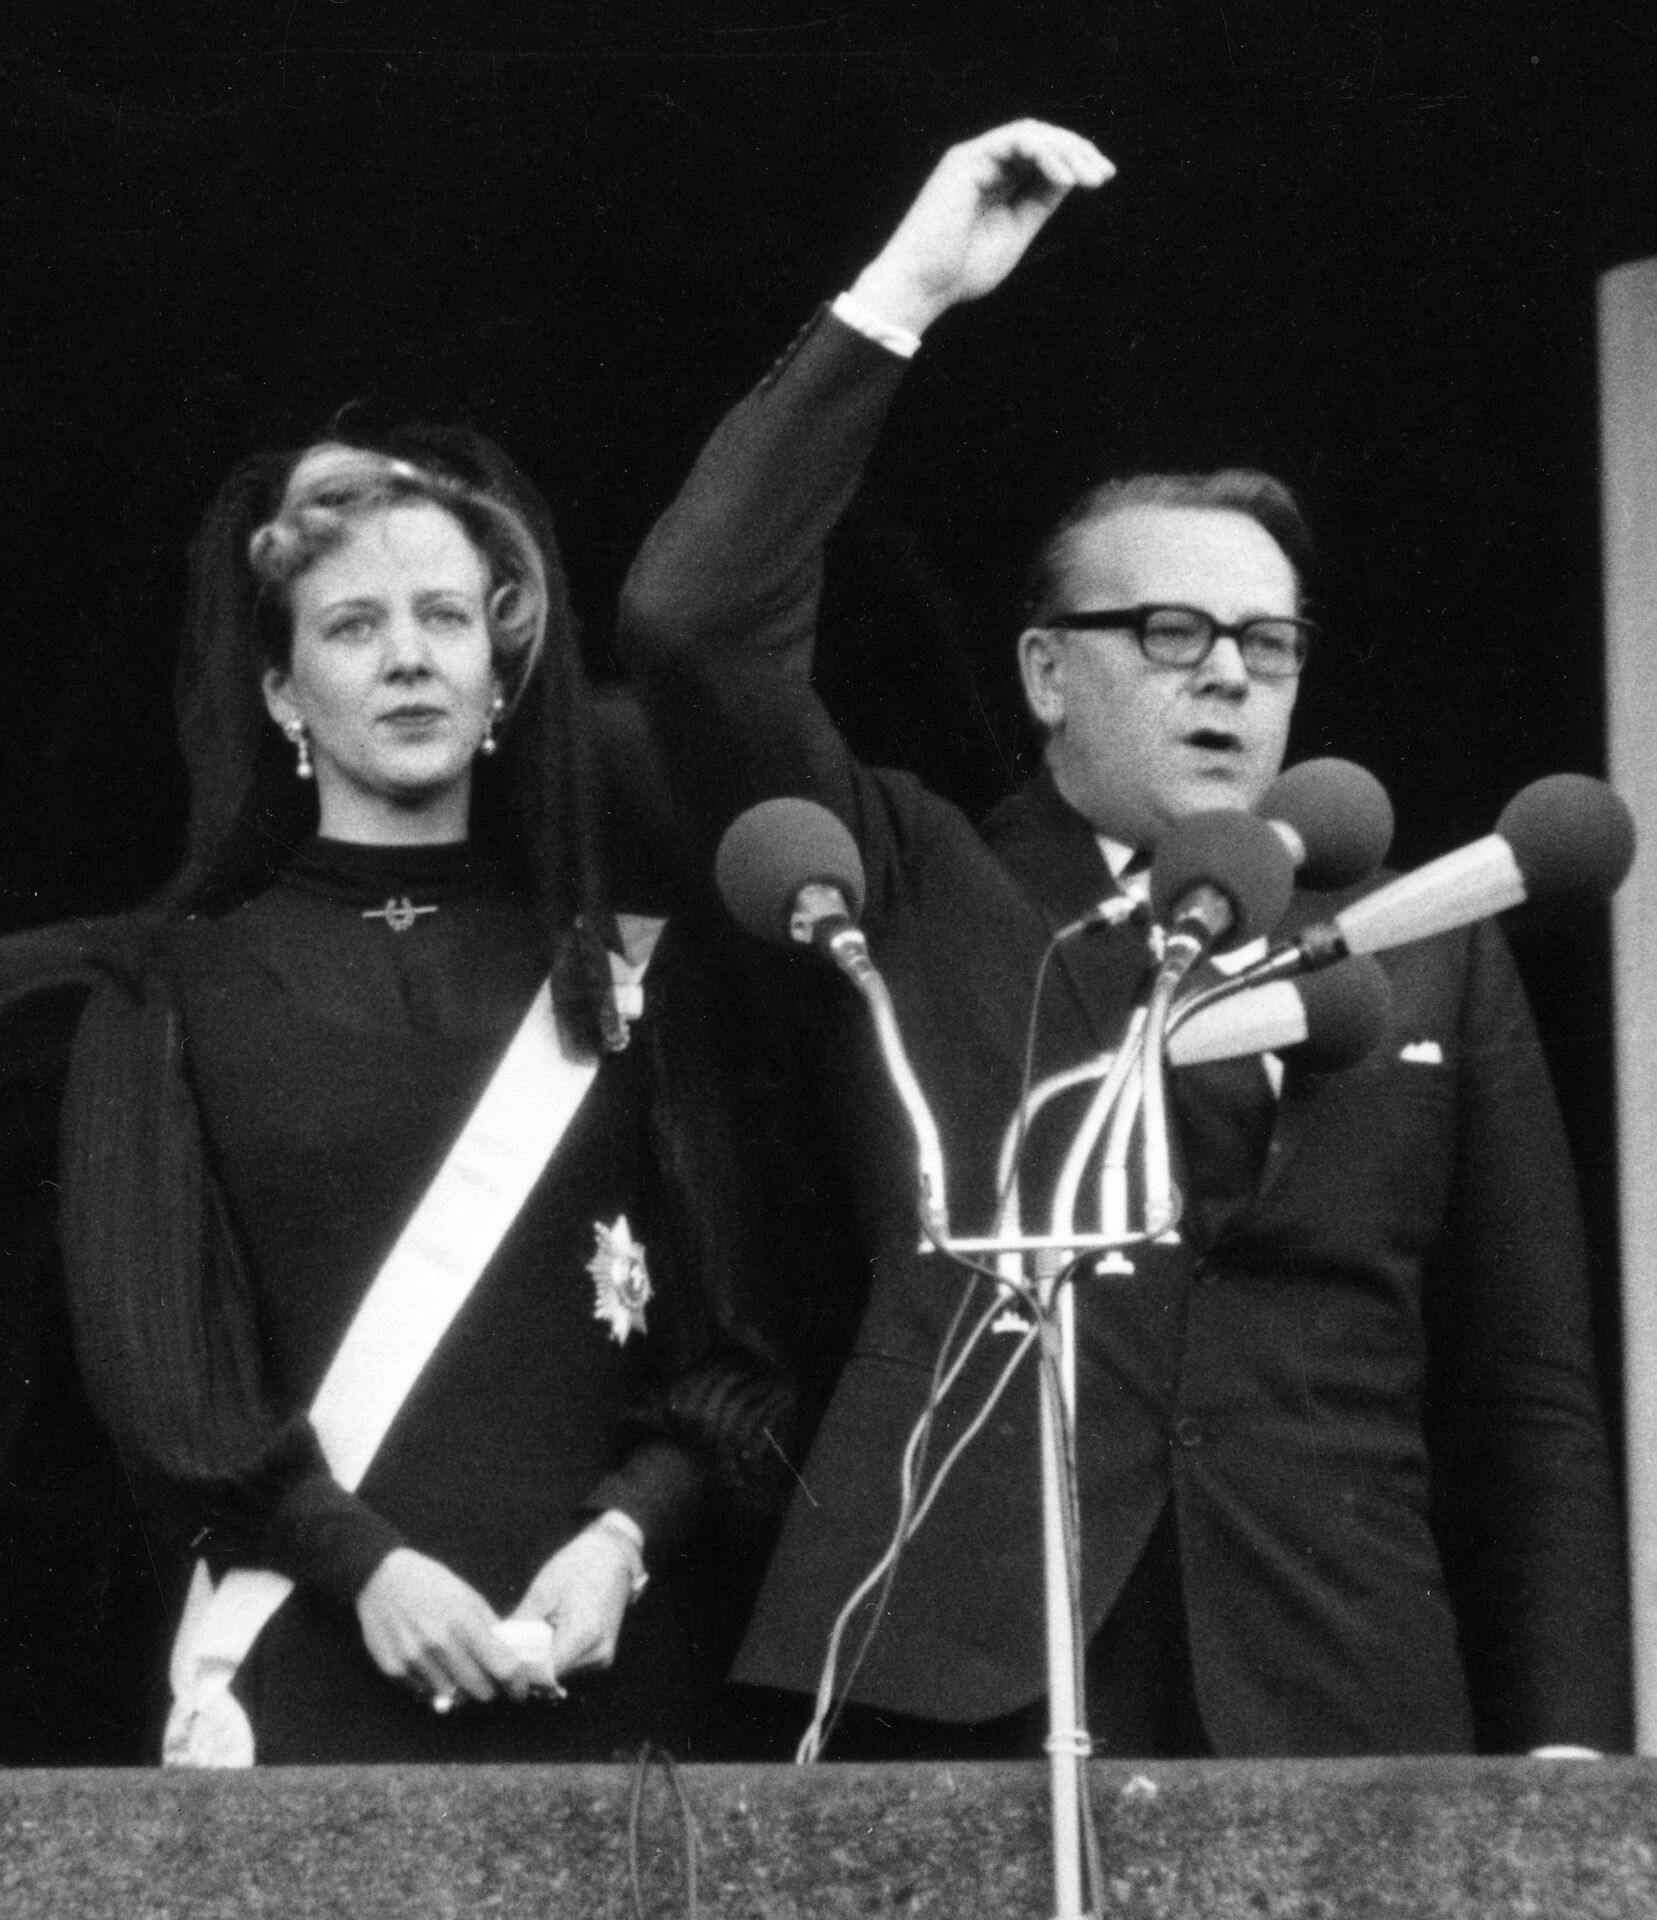 'Hans Majestæt Kong Frederik d. IX er død. -Længe leve Hendes Majestæt Dronning Margrethe d. II' udtaler statsminister Jens Otto Krag på balkonen, da han udråber Tronfølgeren, Prinsesse Margrethe, til Danmarks Dronning.